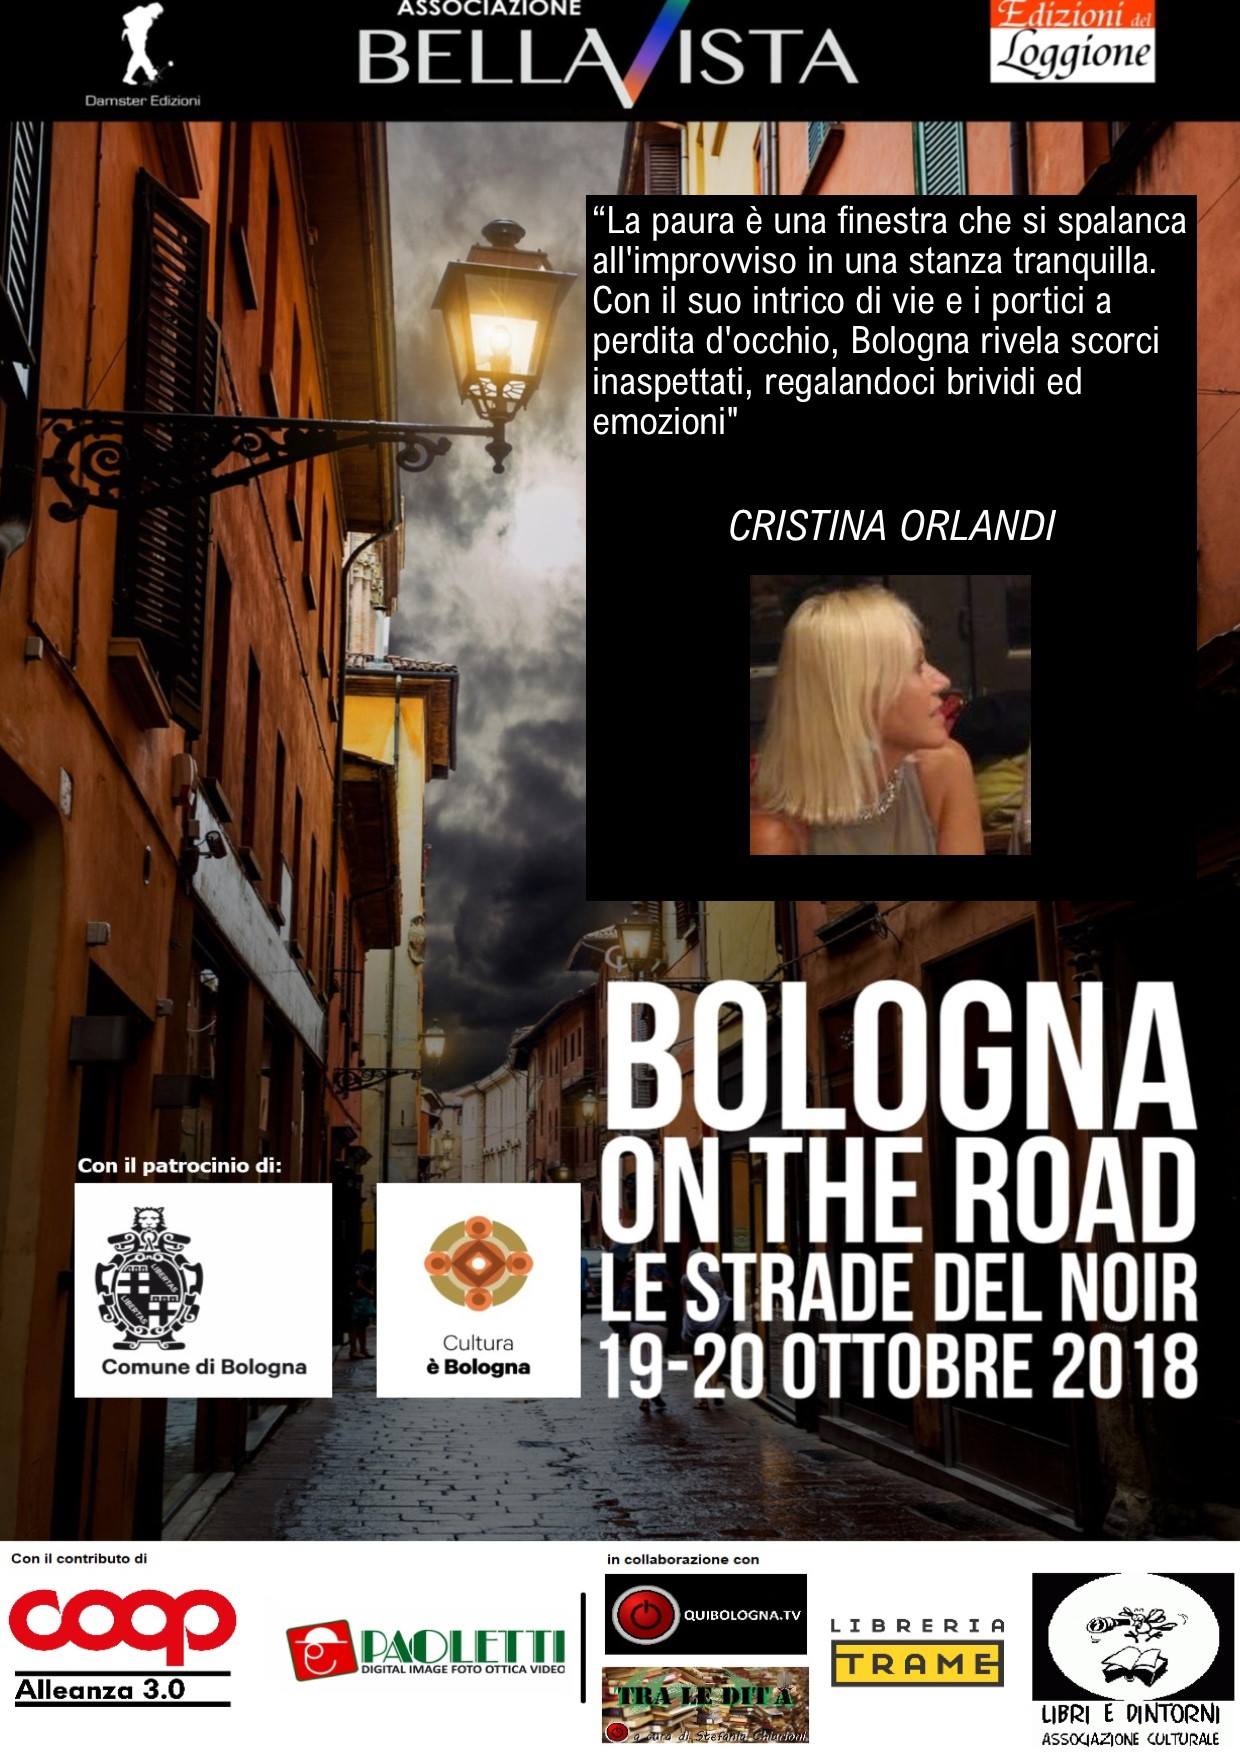 Le strade del noir, Bologna, 20 ottobre 2018